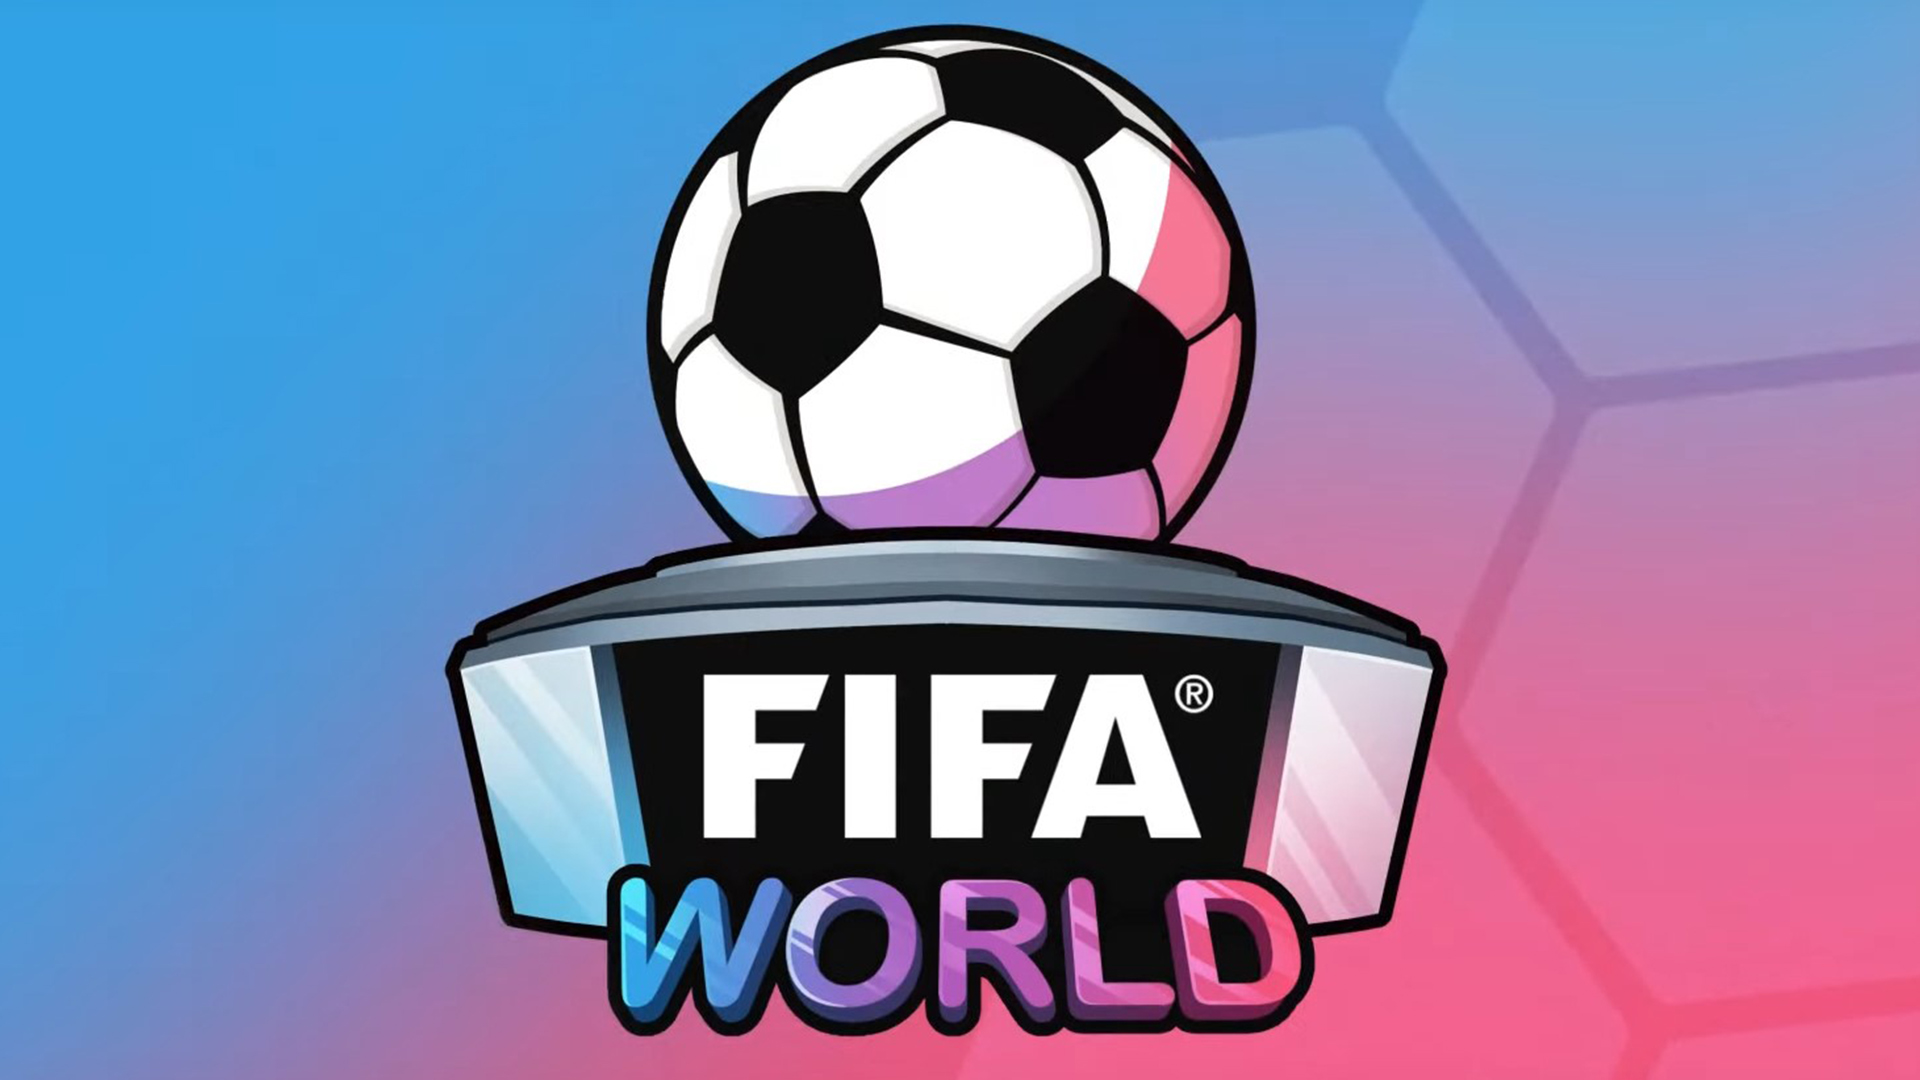 Ra mắt FIFA World, FIFA cũng công bố hợp tác với hệ thống game Roblox - Ảnh 1.